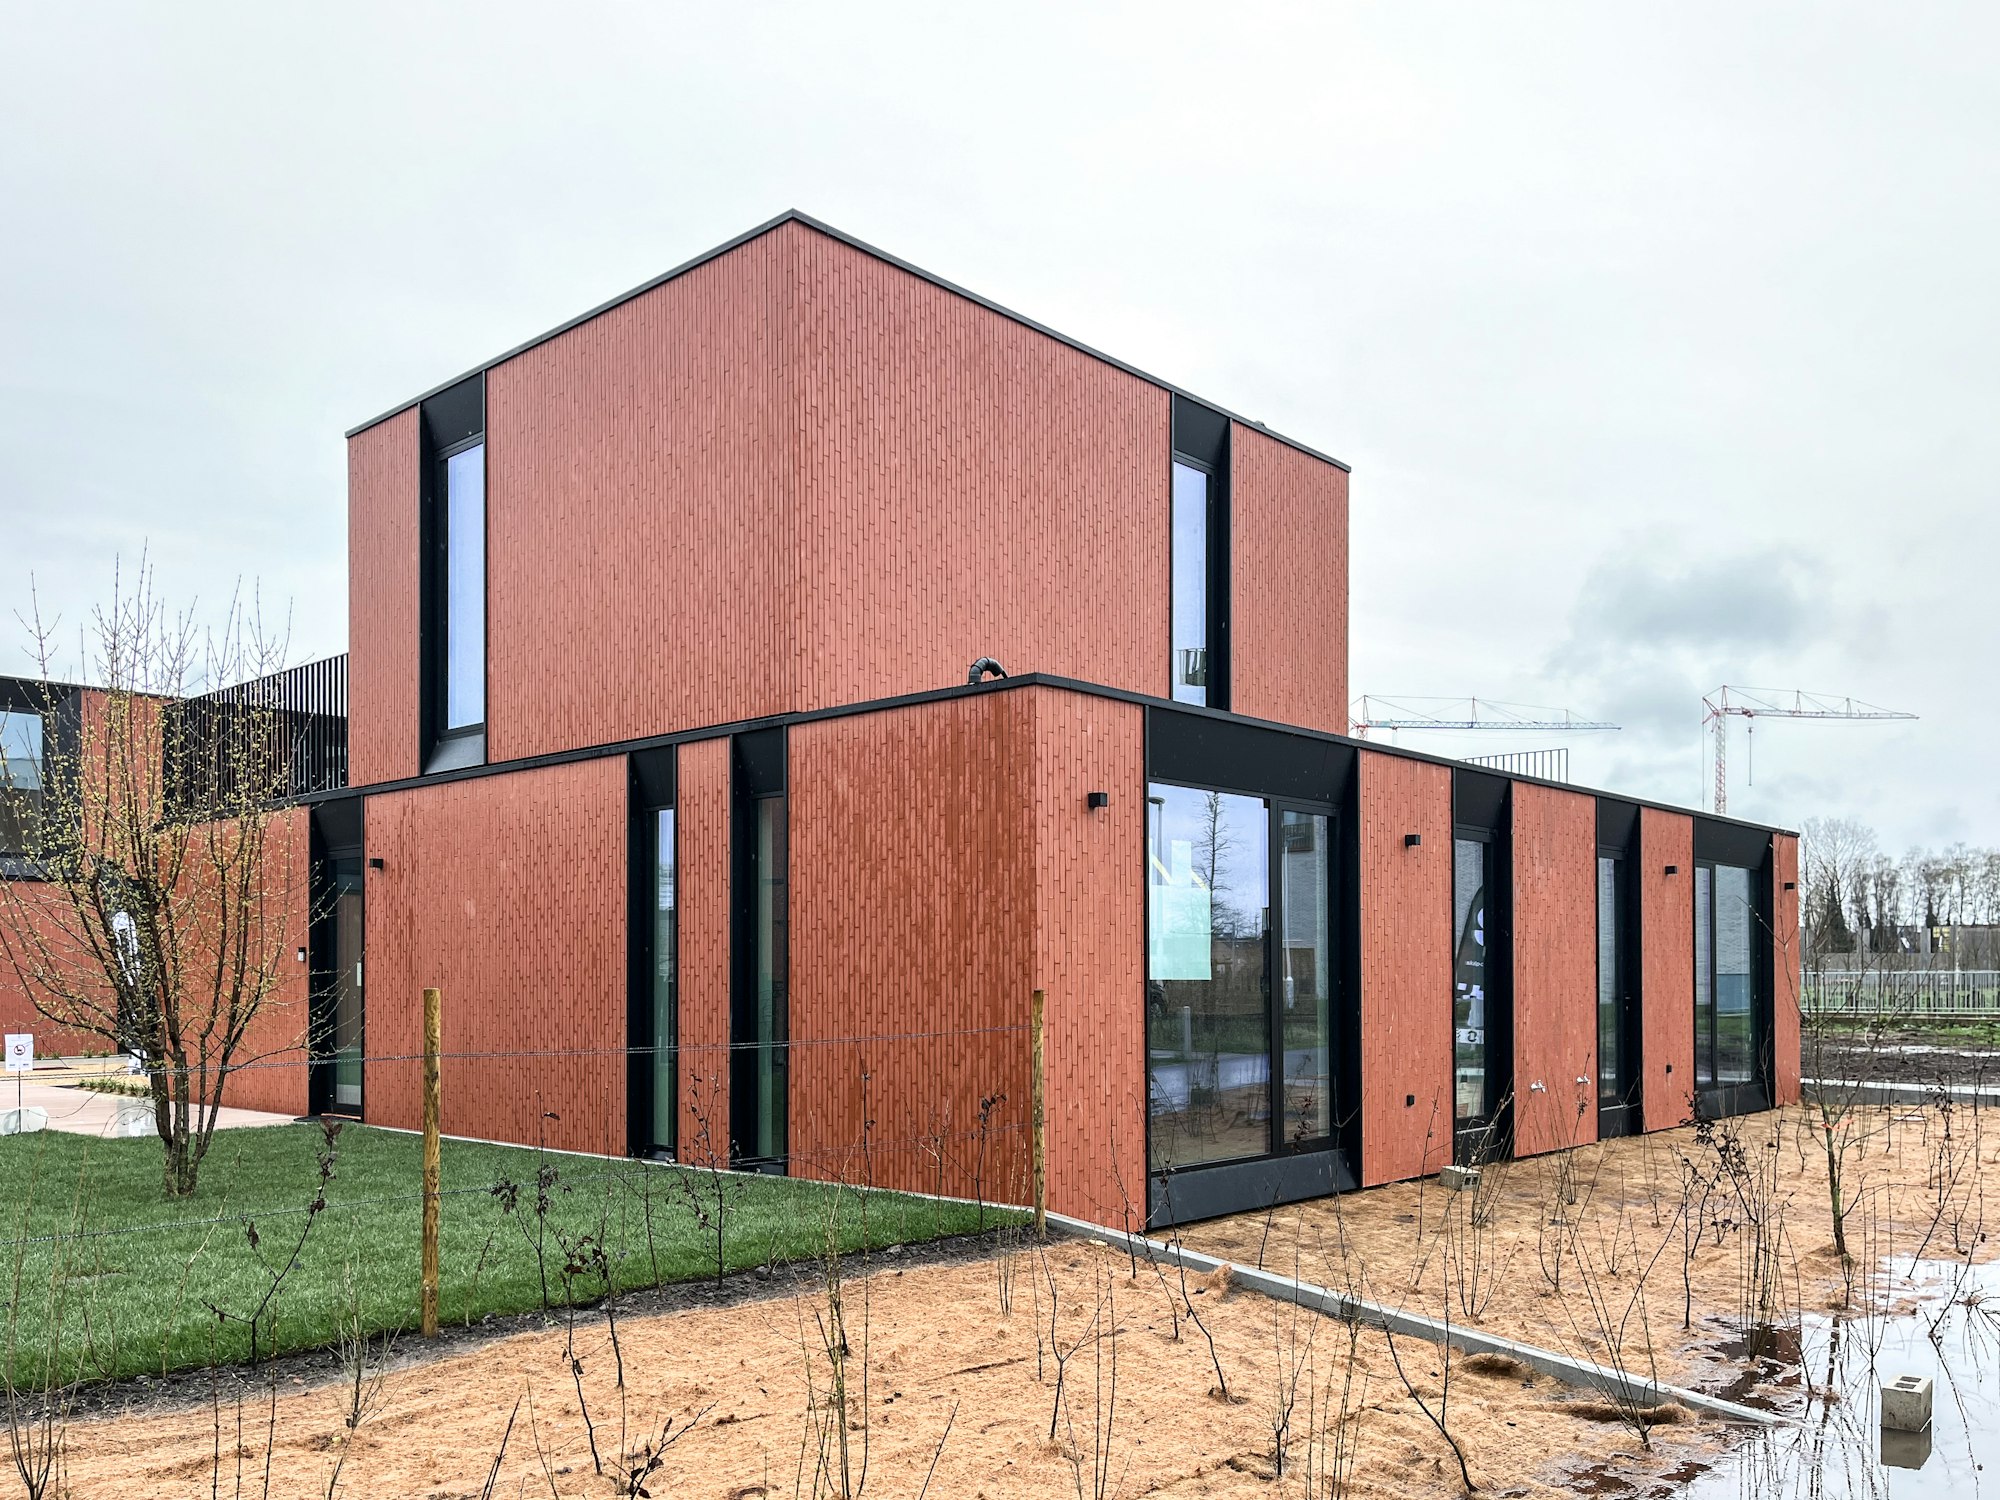 Skilpod #130 — houtskeletbouw woning met 4 slaapkamers, modern design met rode steen, combinatie van twee half-open woningen